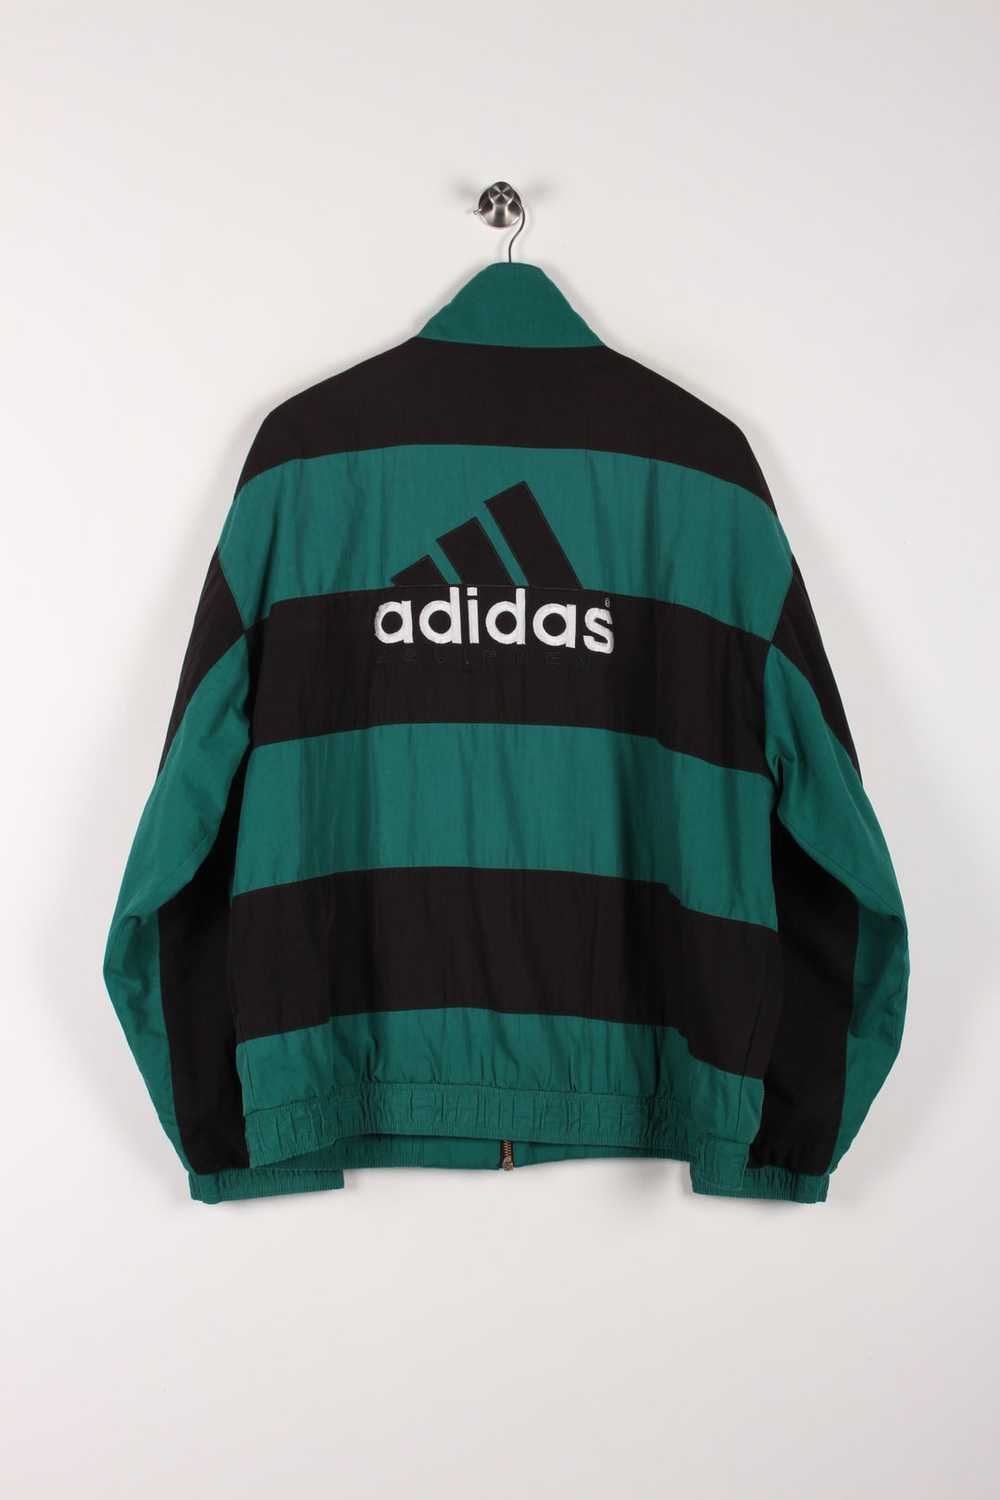 90's Adidas Equipment Jacket Large - image 2